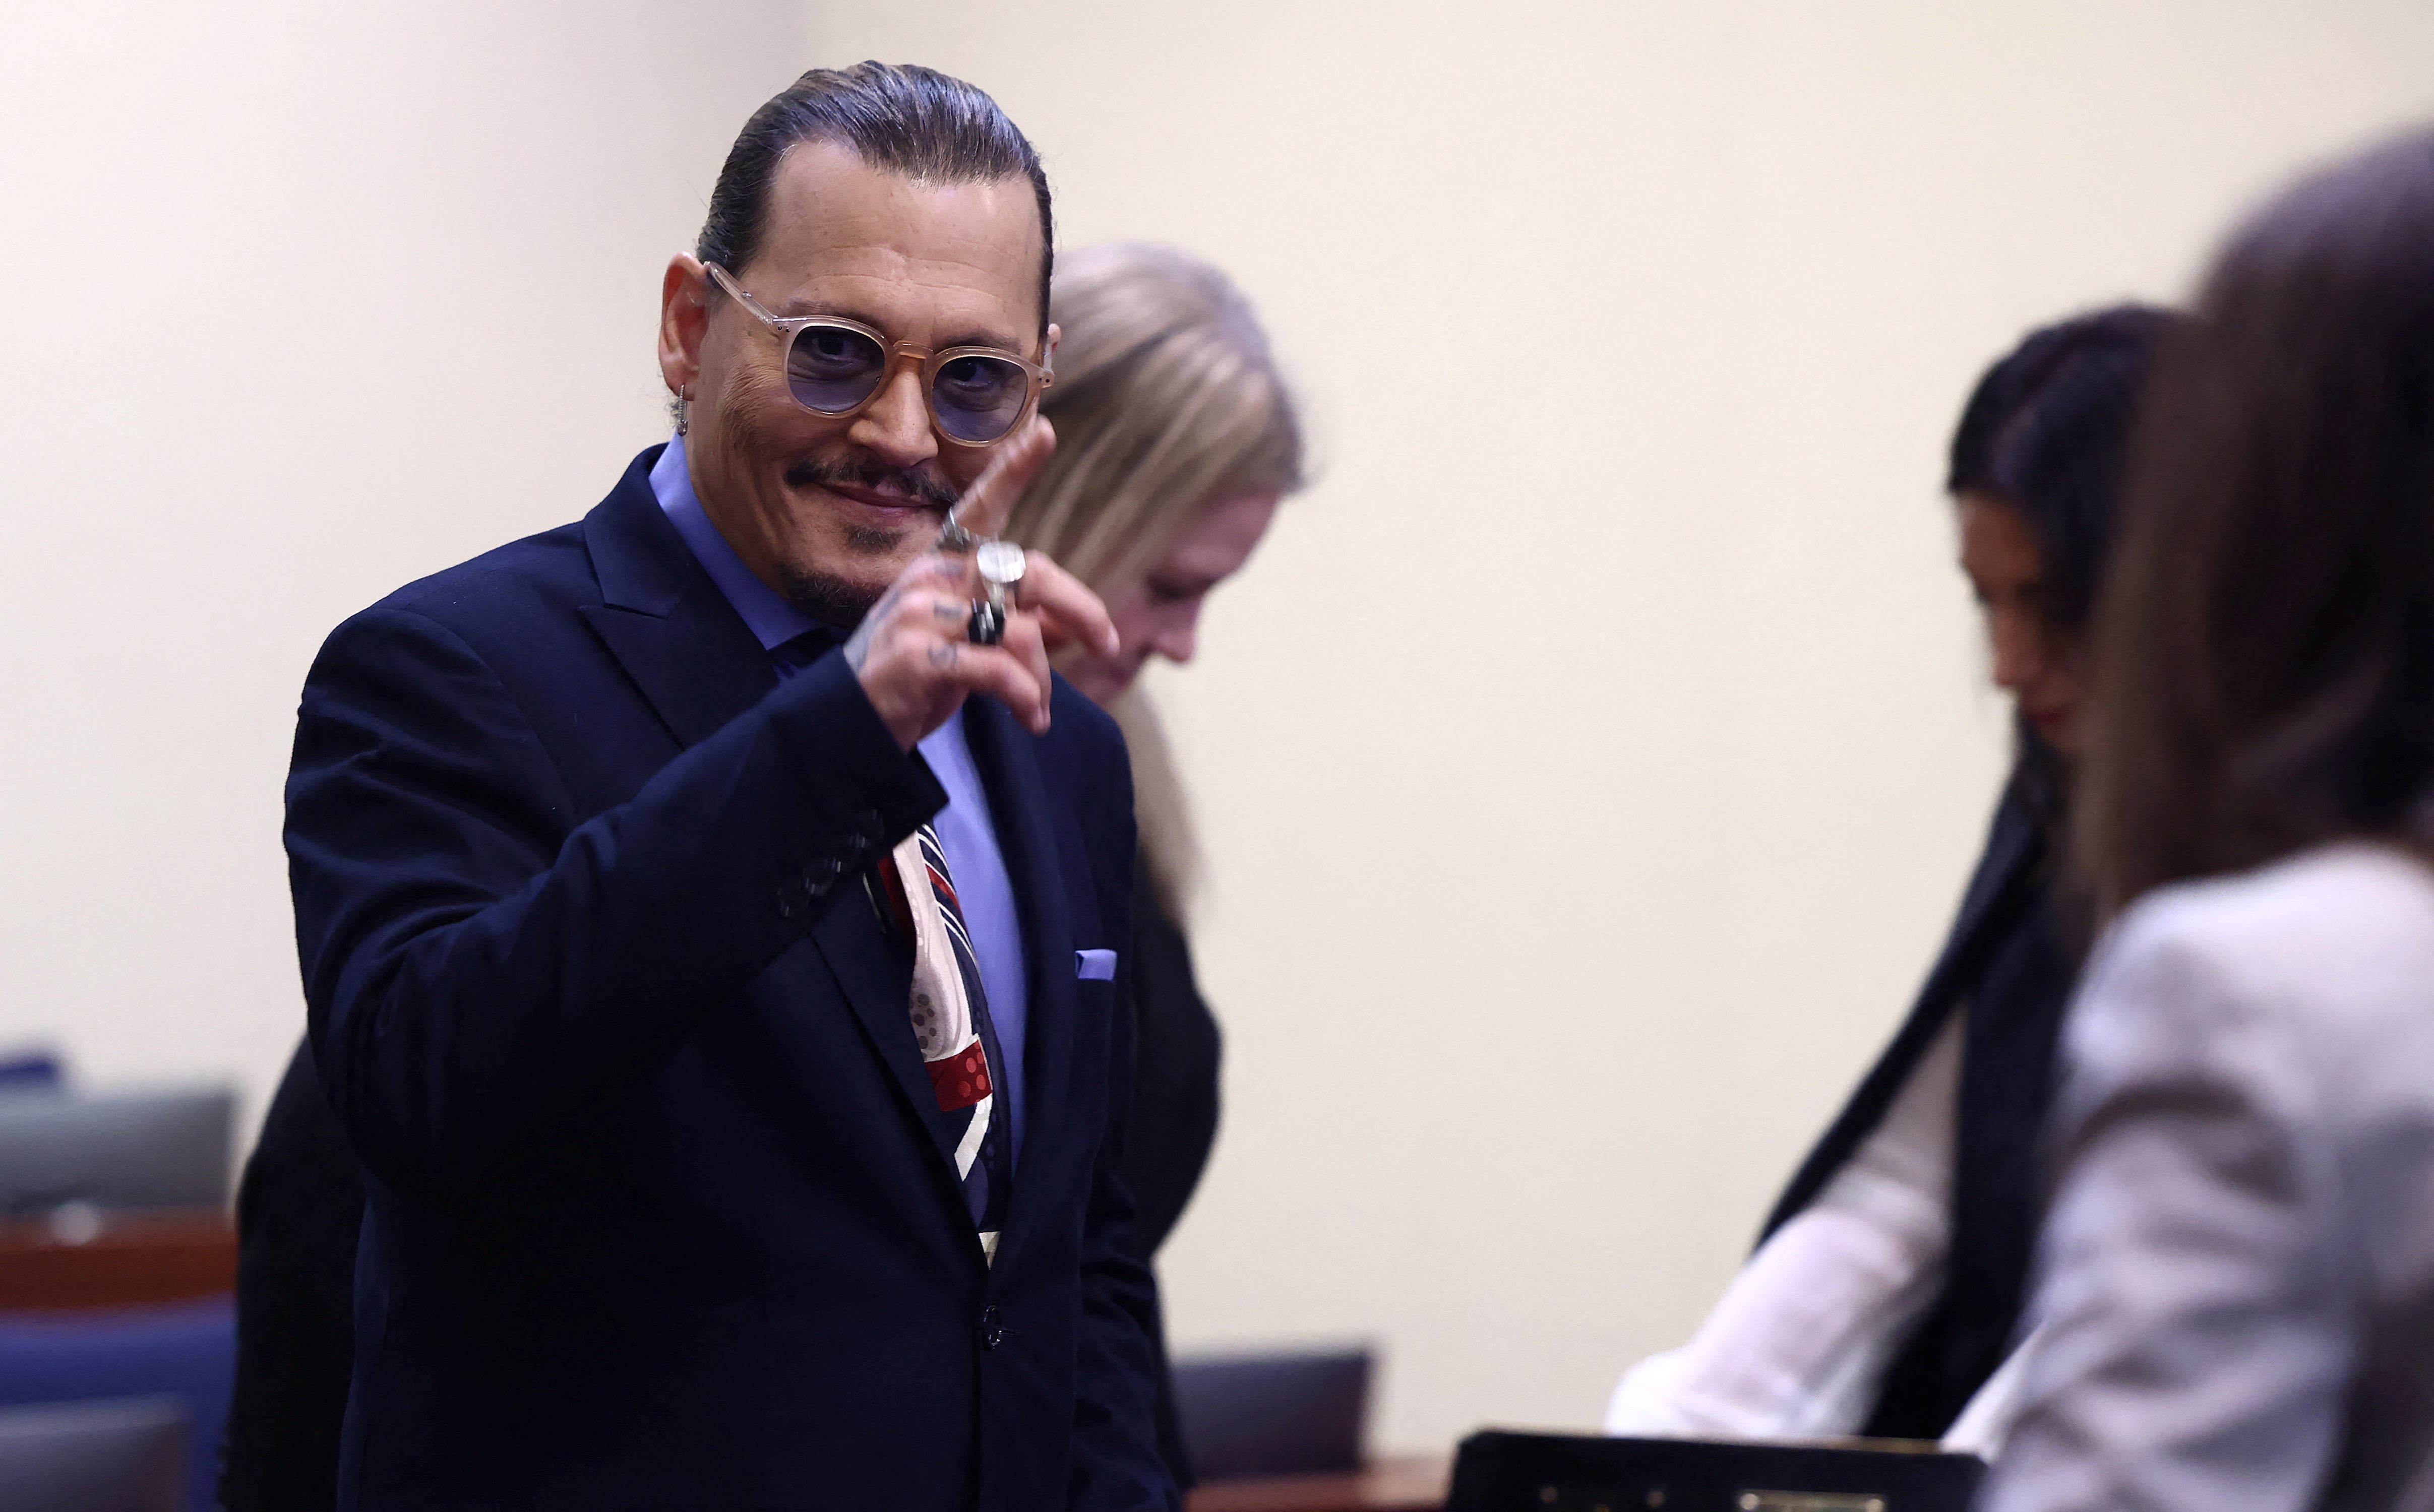 El actor Johnny Depp llega a la sala del Tribunal de Circuito del Condado de Fairfax durante su caso de difamación contra su exesposa, la actriz Amber Heard en Fairfax, Virginia, Estados Unidos, el 5 de mayo de 2022